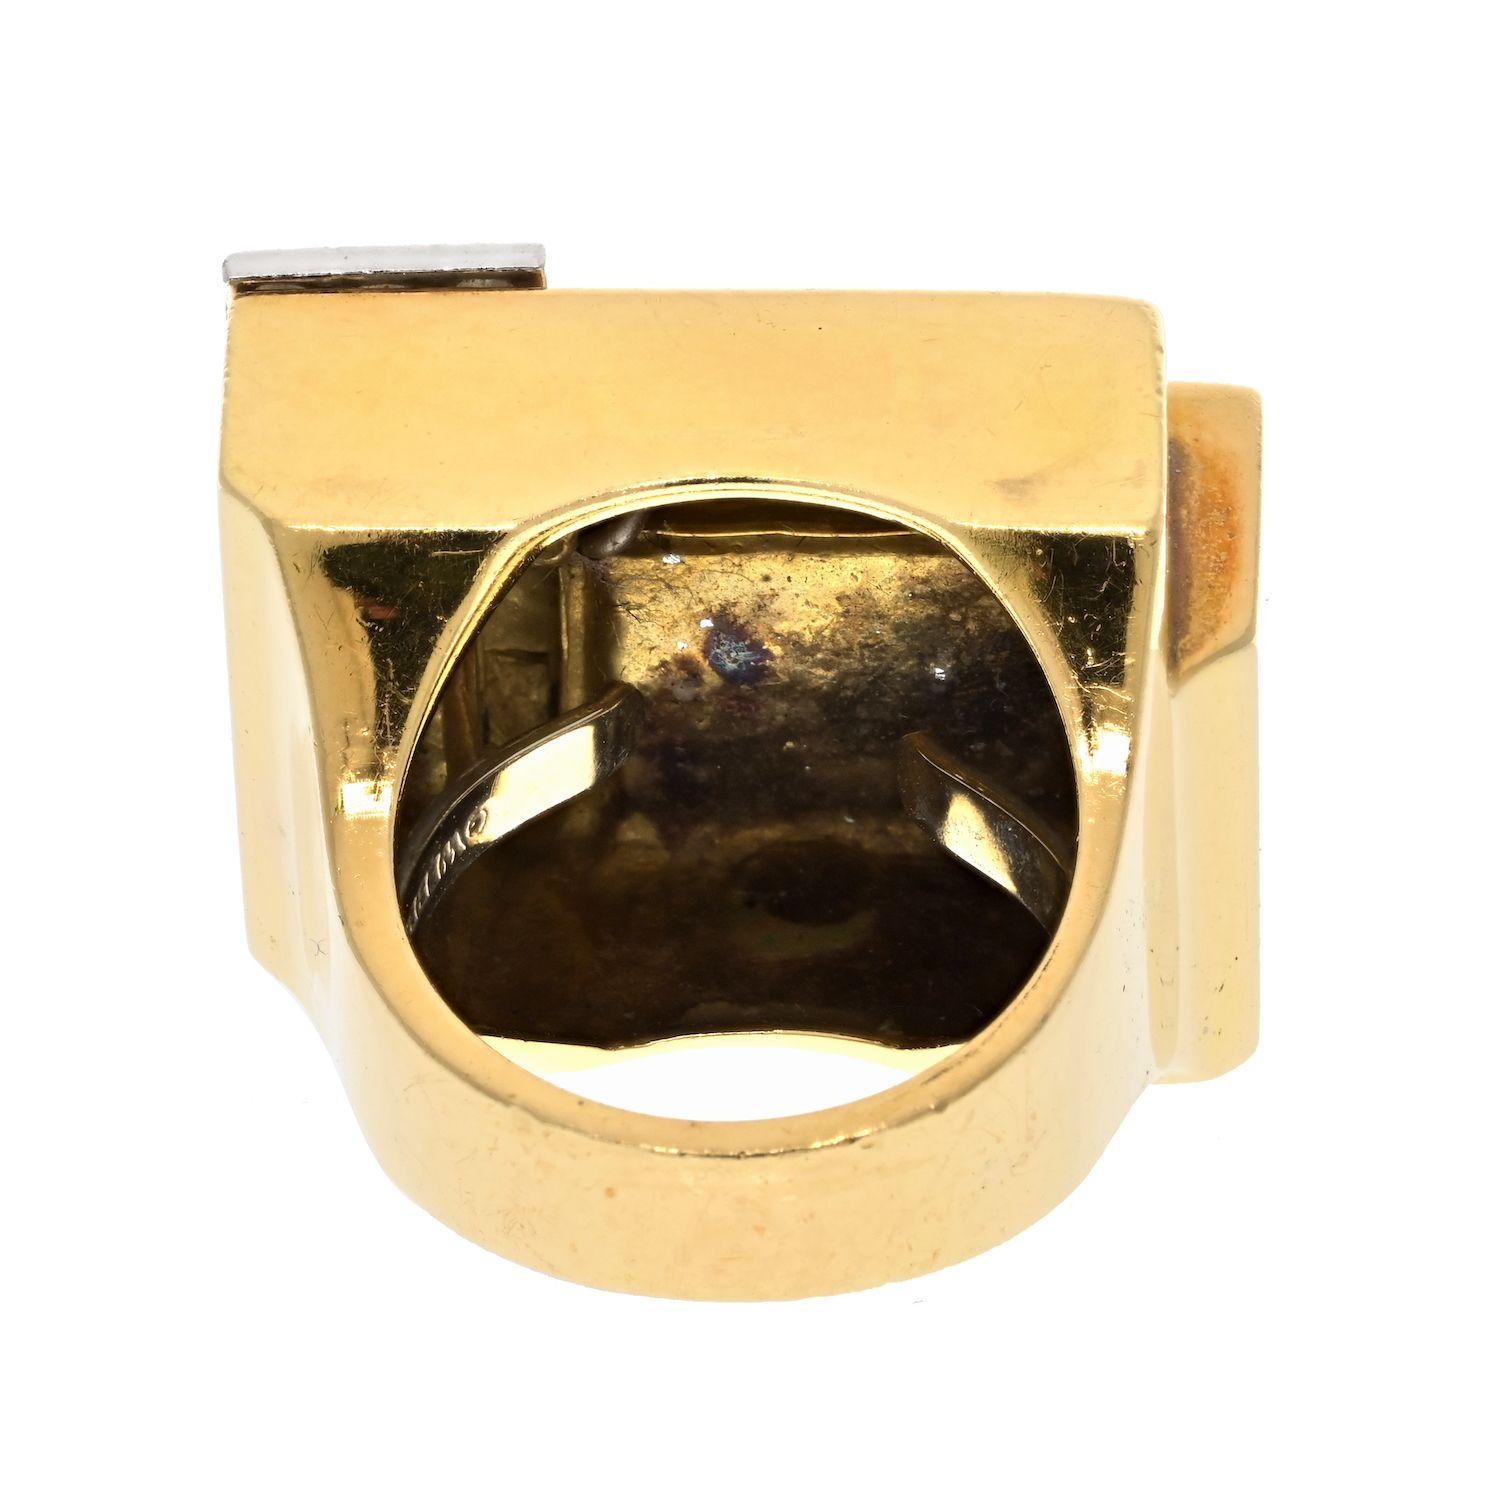 Diesen Ring von David Webb zu besitzen, ist wirklich aufregend! Das Platin, das 18-karätige Gelbgold und die weiße Emaille sorgen für einen atemberaubenden und einzigartigen Look, der seinesgleichen sucht. Ein geometrischer Cocktailring in freier